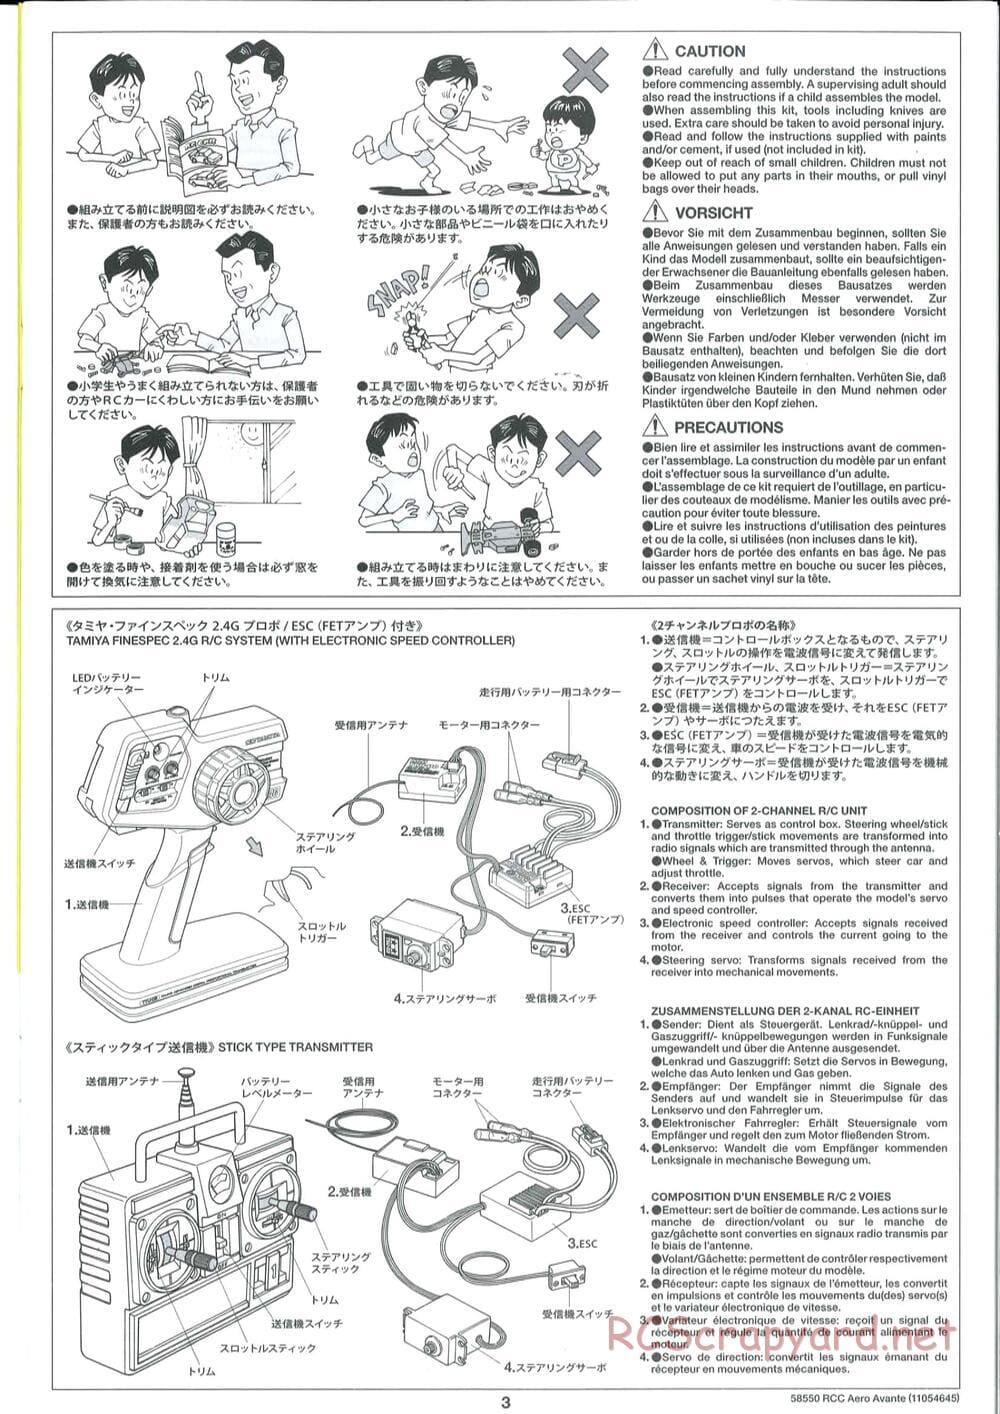 Tamiya - Aero Avante Chassis - Manual - Page 3